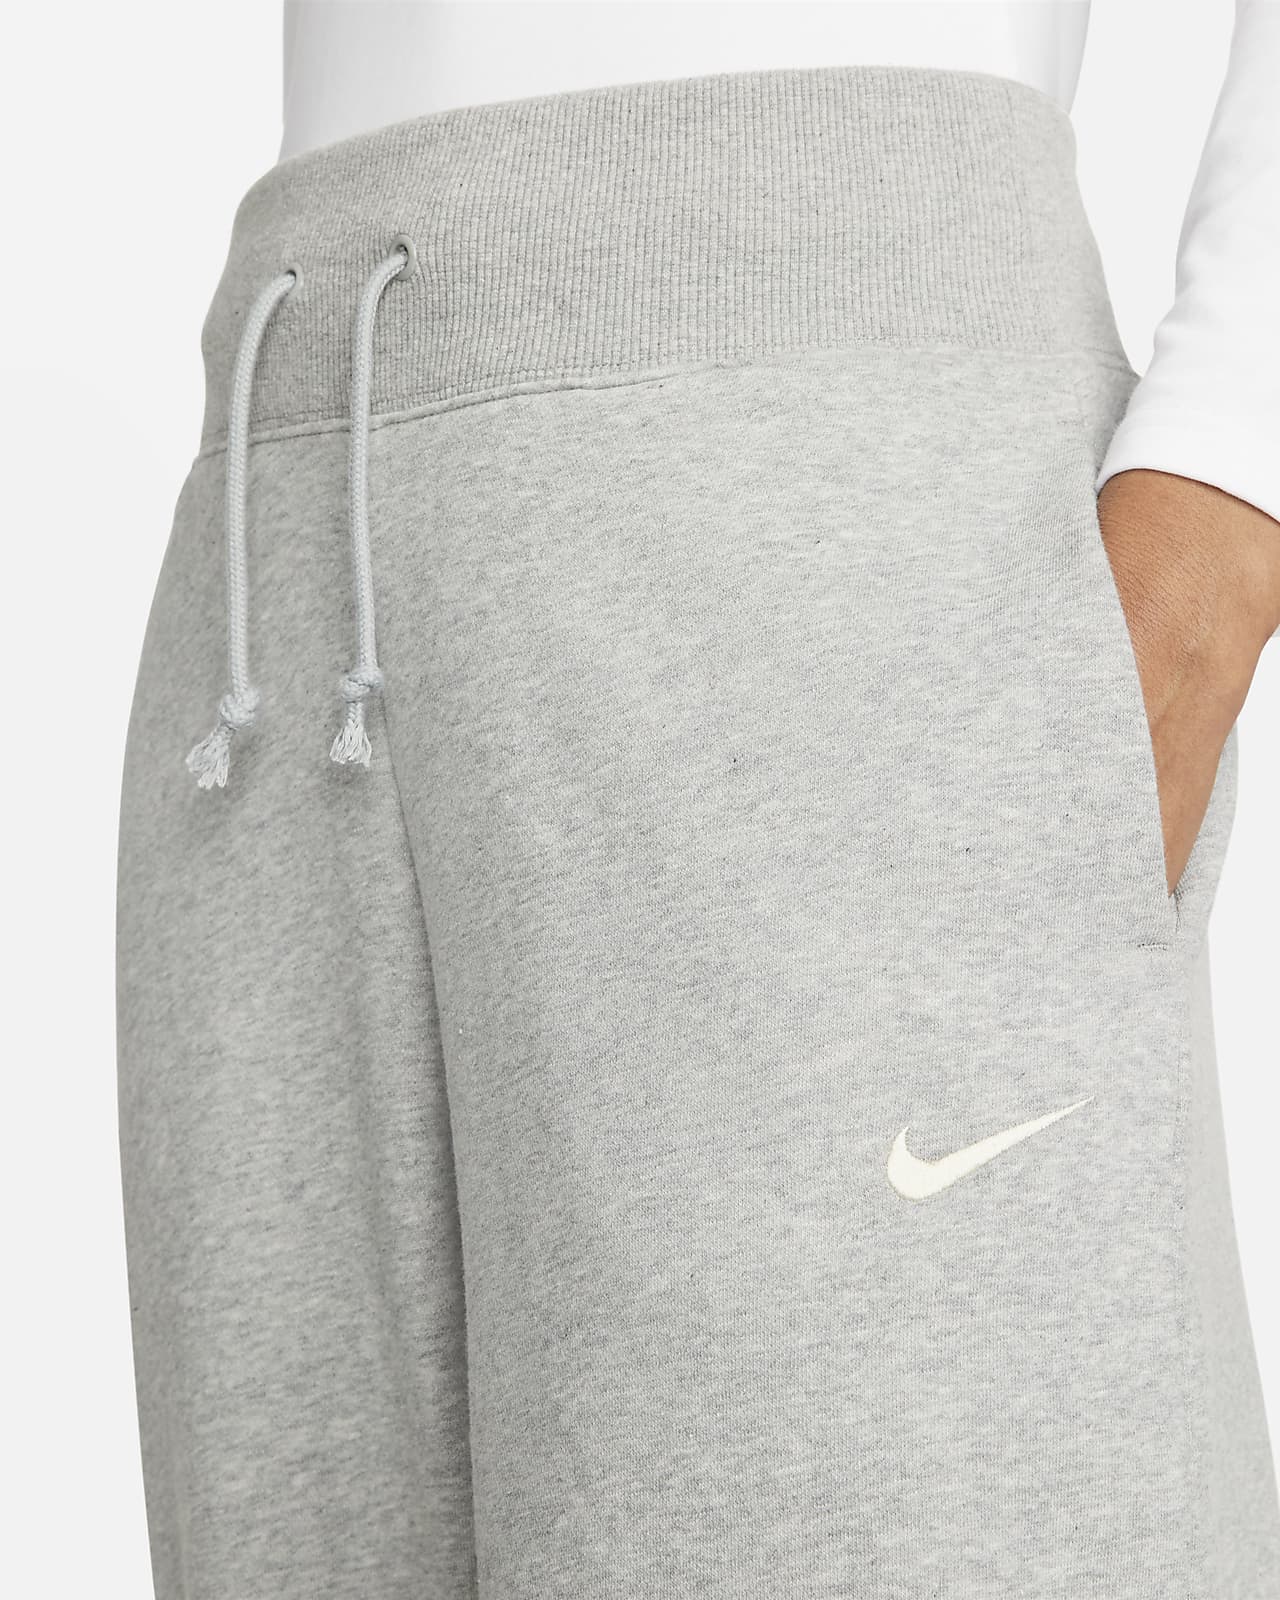 Haut de survêtement Nike Sportswear pour homme